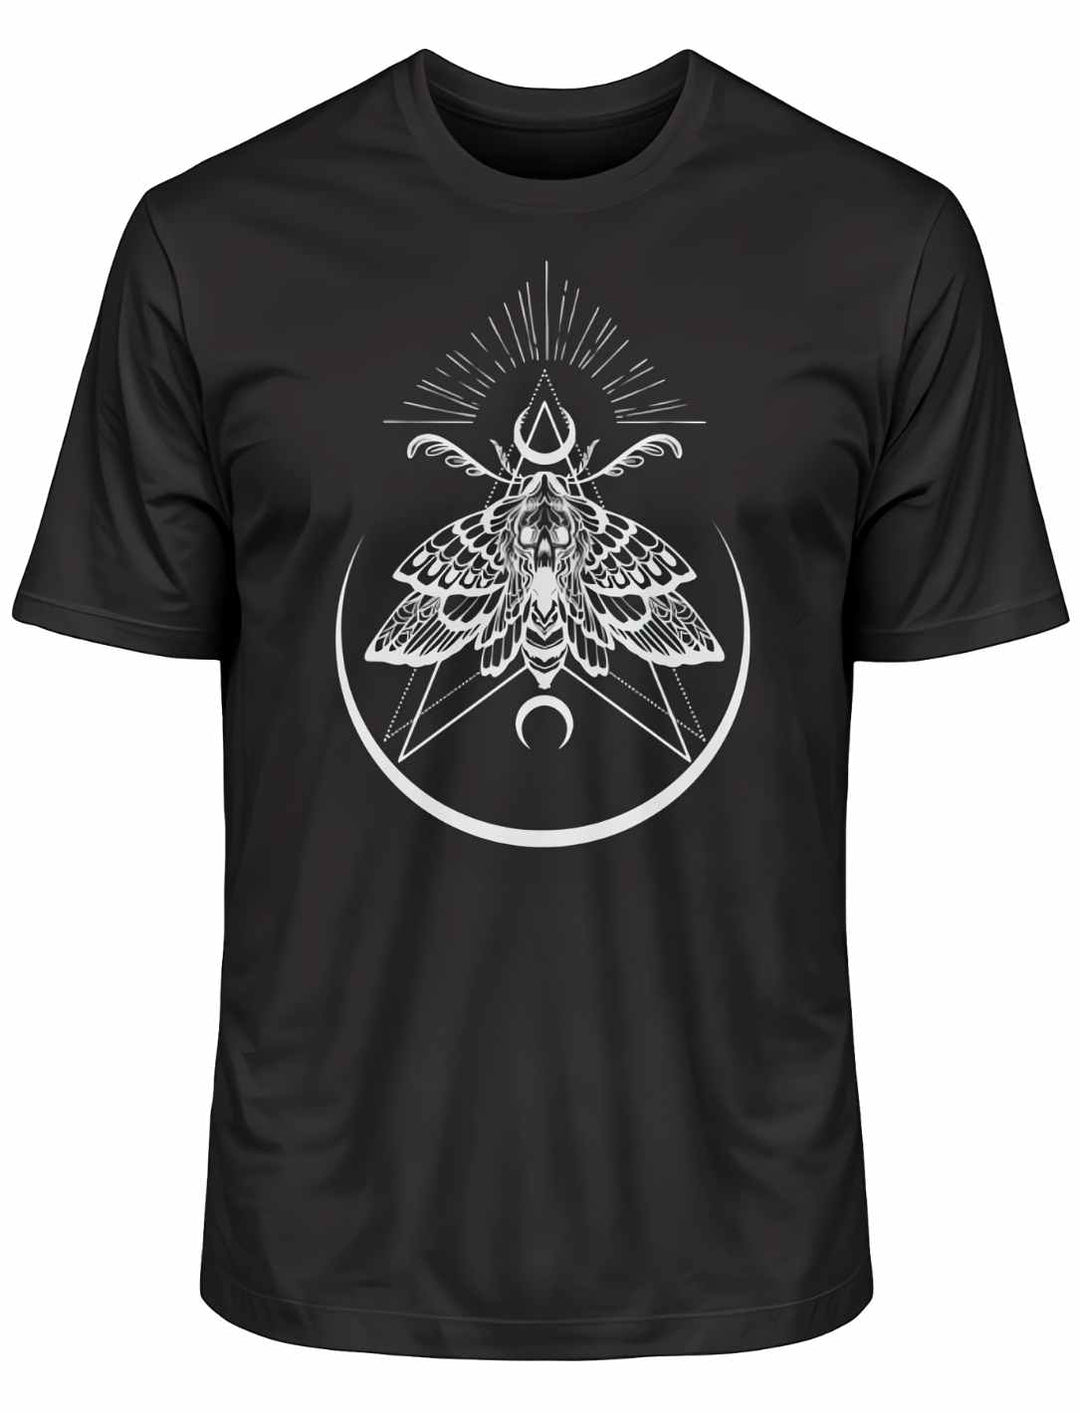 Schwarzes T-Shirt 'Lichtbringer der Verwandlung' mit Nachtfalter-Motiv, liegend auf weißem Hintergrund